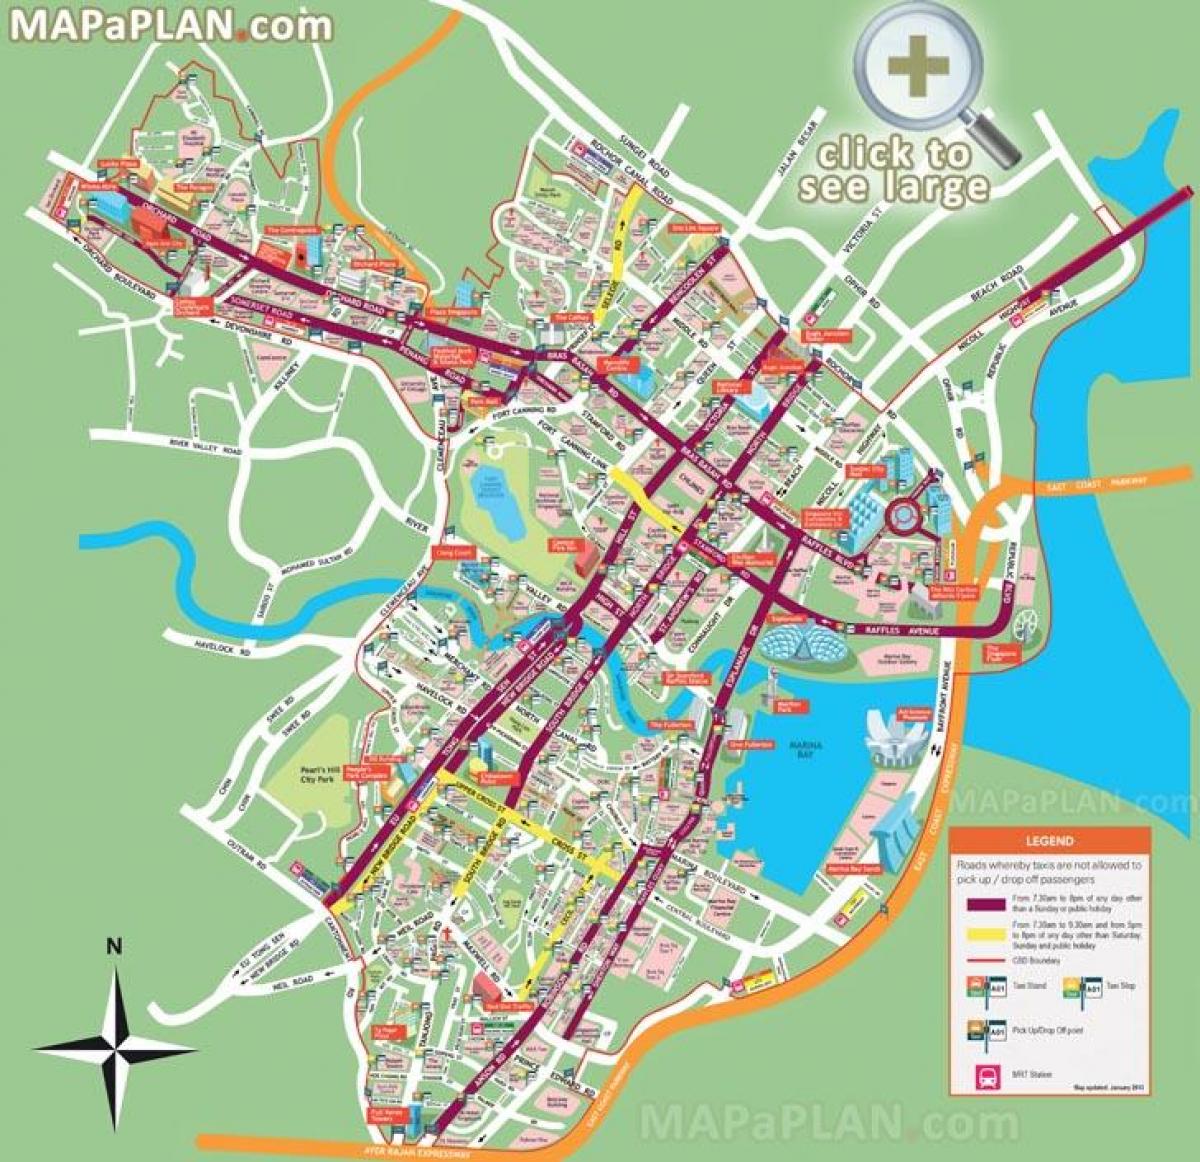 Straßenkarte von Singapur